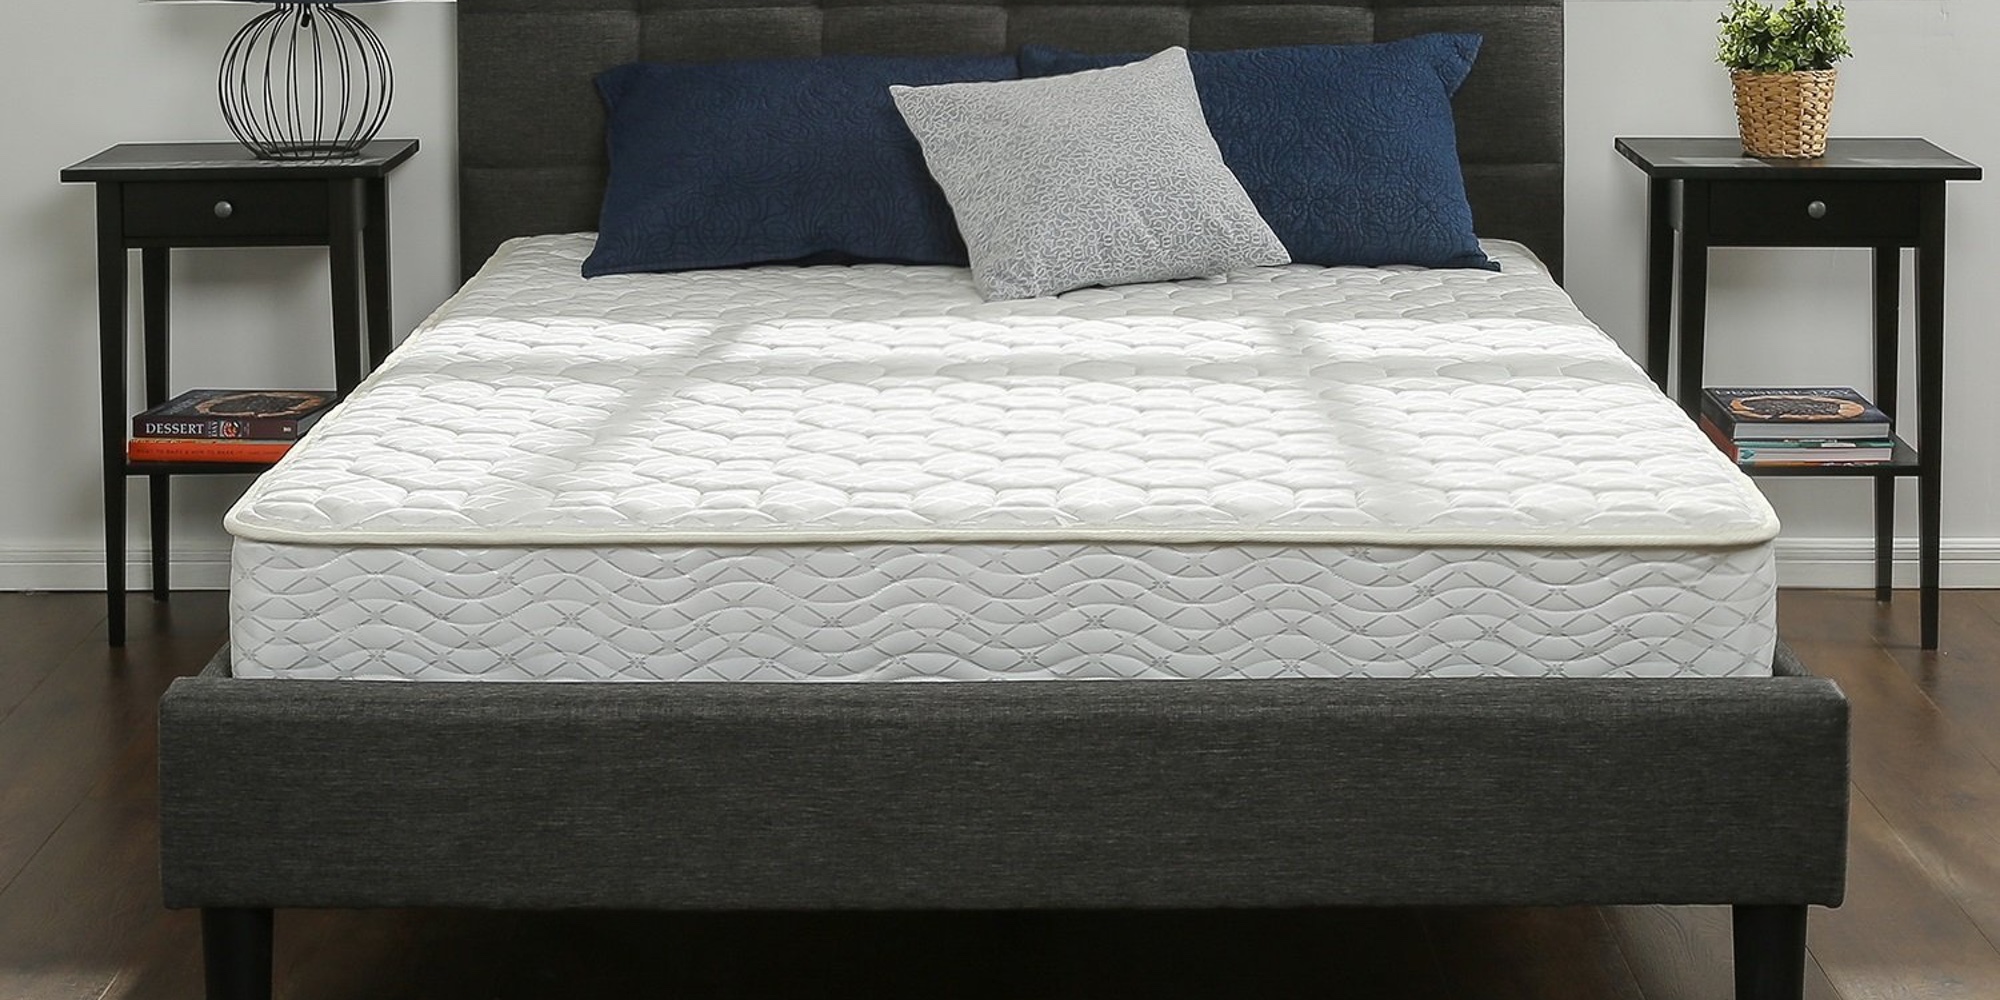 zinus 8 inch mattress reviews